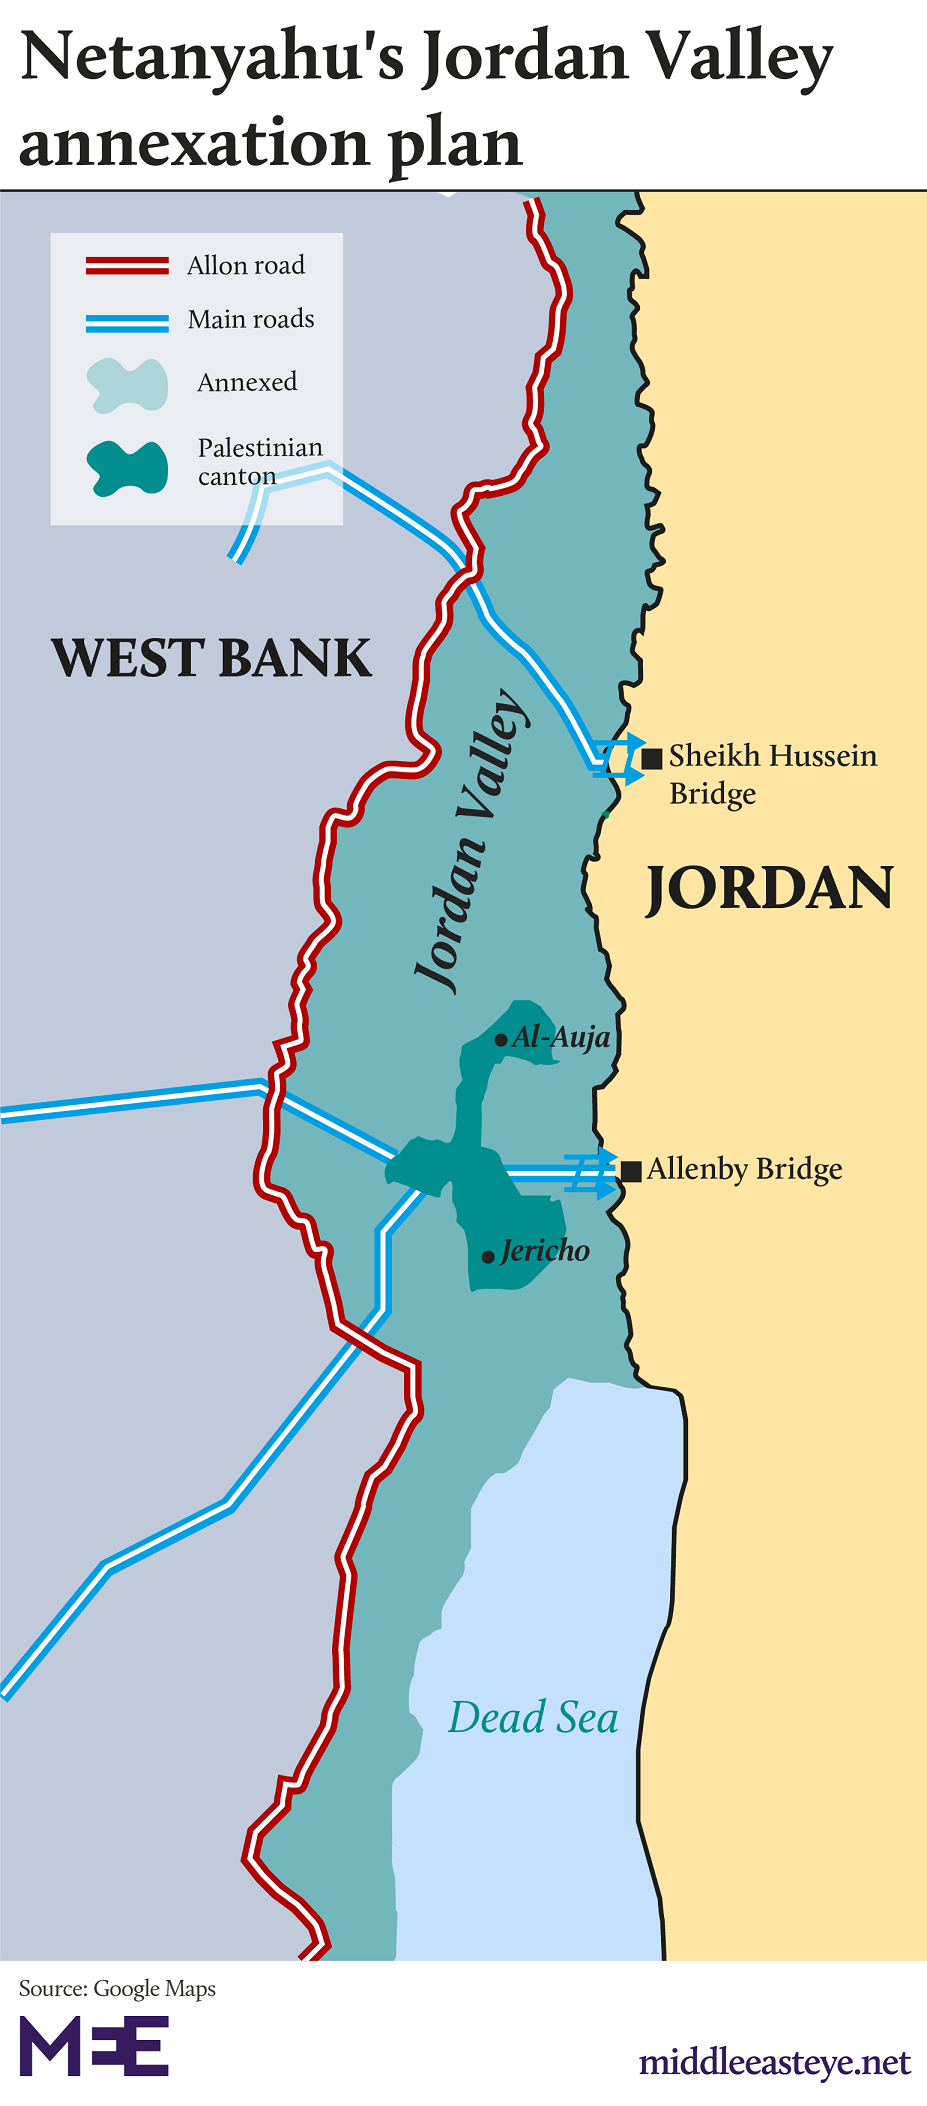 Netanyahu, Israel, annex Jordan Valley